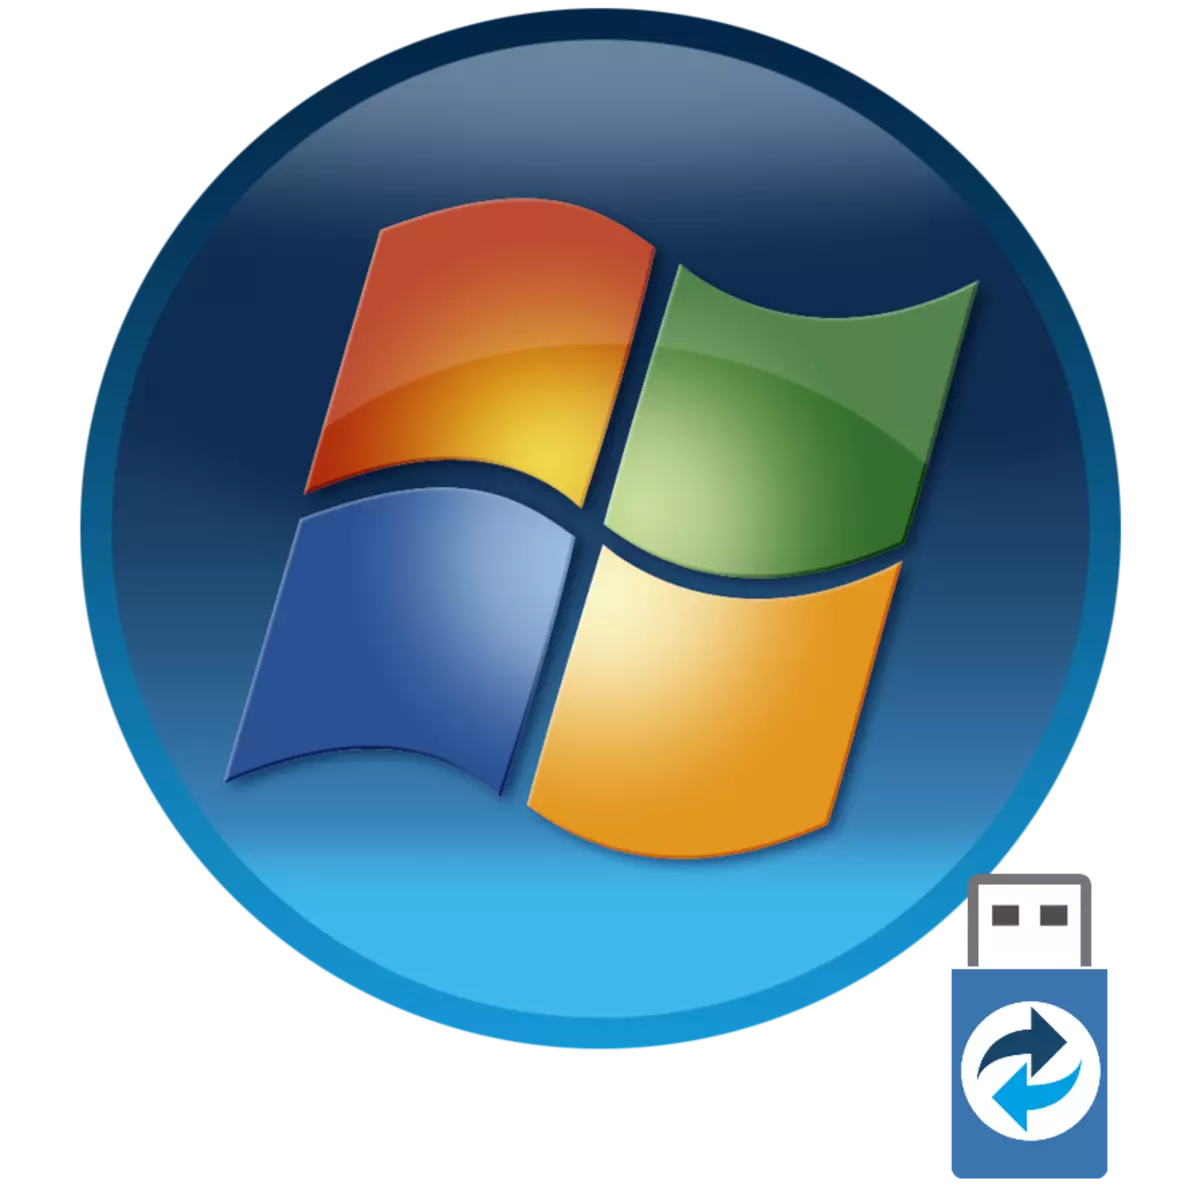 לאָודינג Windows 7 פון די שטיוול פלאַש פאָר